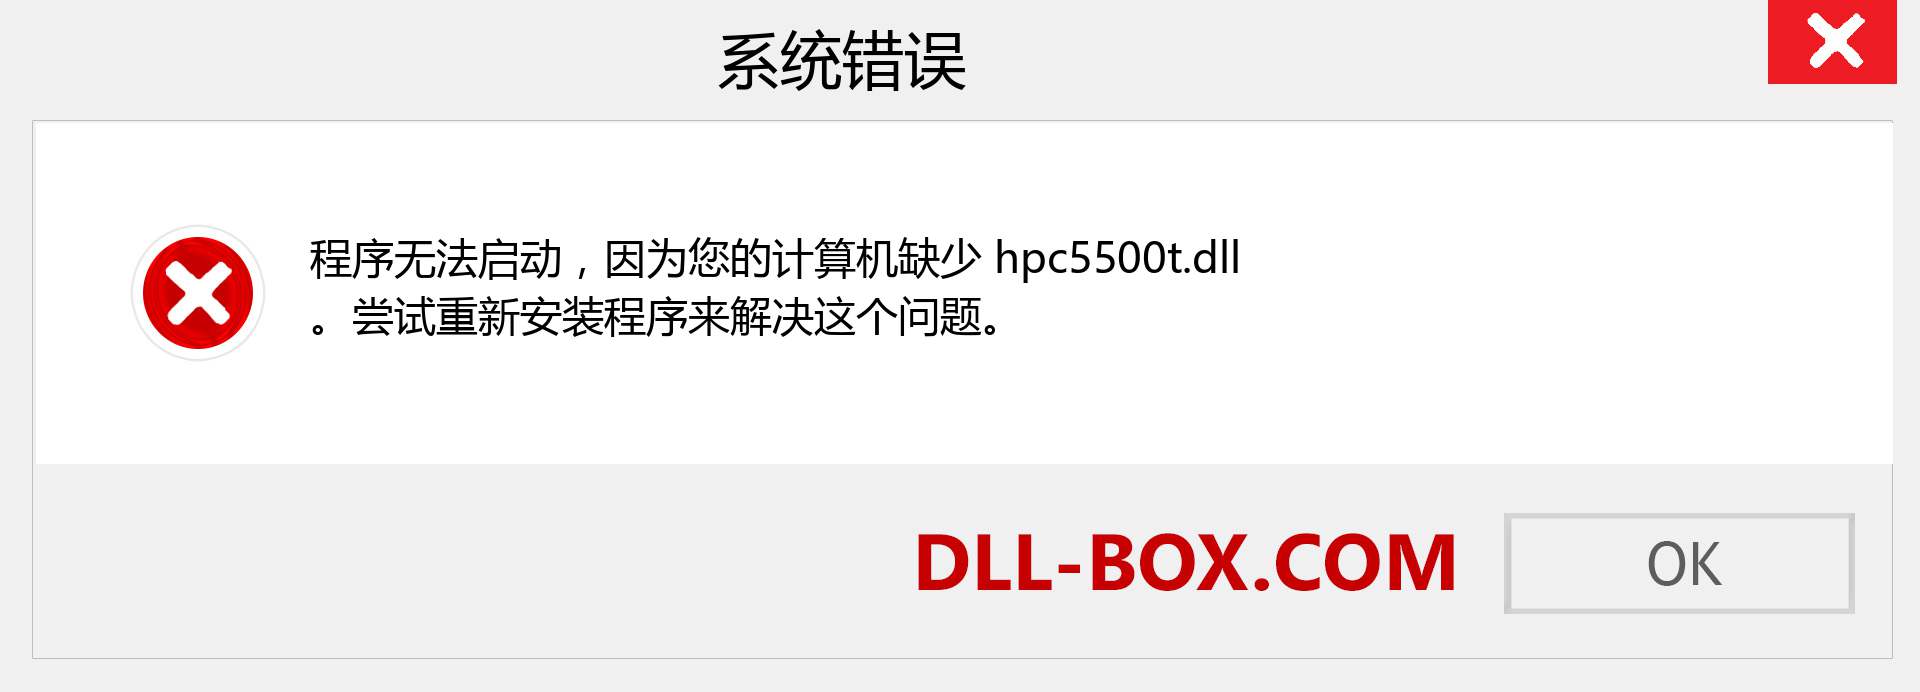 hpc5500t.dll 文件丢失？。 适用于 Windows 7、8、10 的下载 - 修复 Windows、照片、图像上的 hpc5500t dll 丢失错误